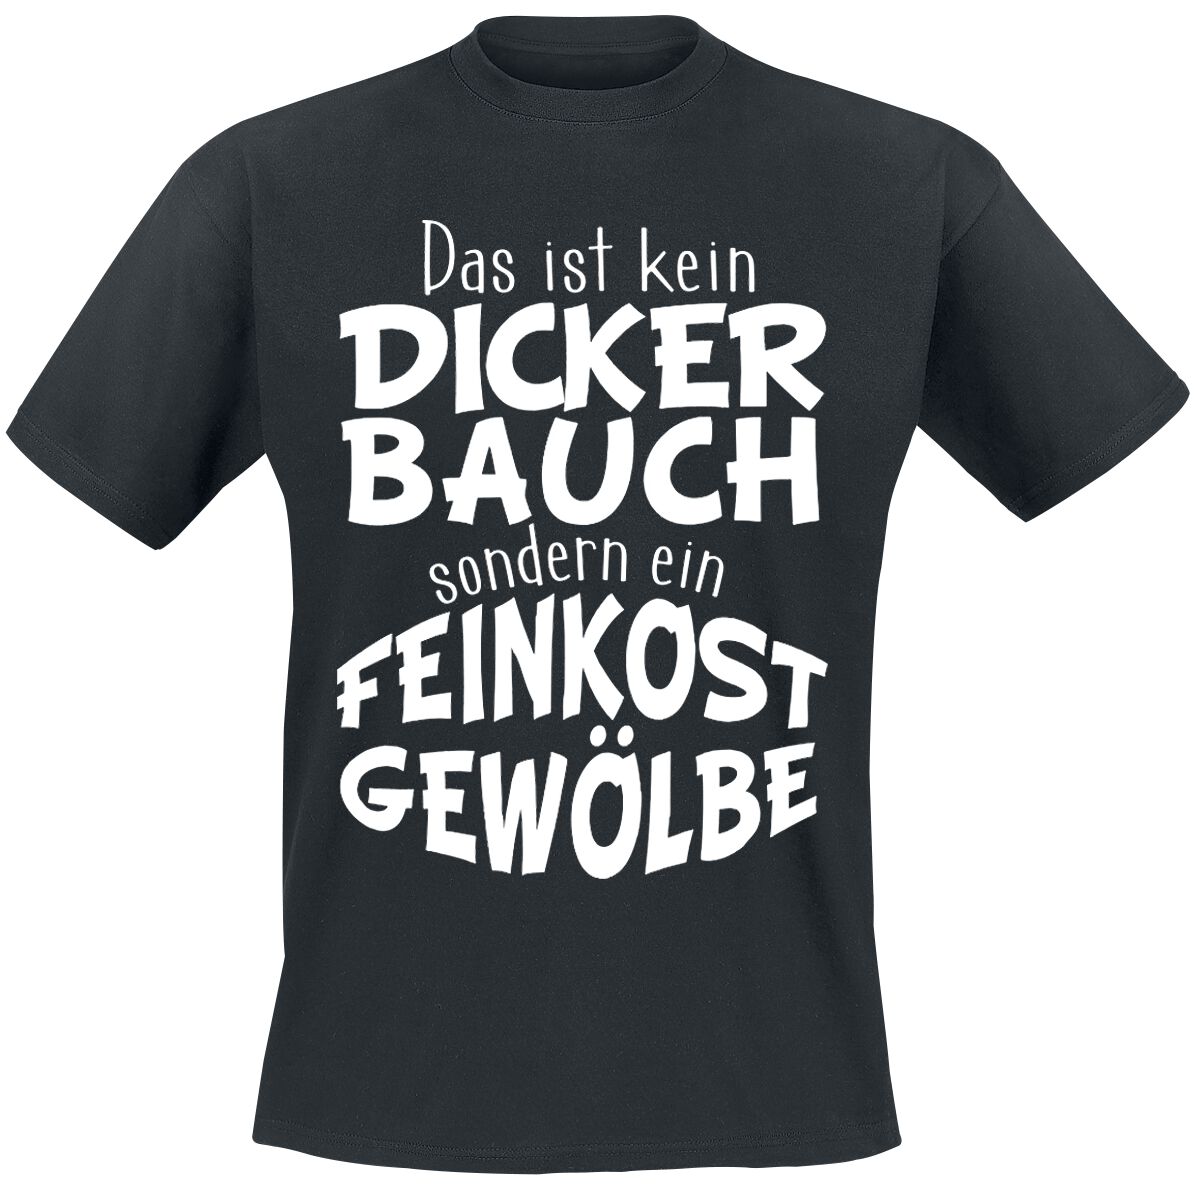 Food T-Shirt - Dicker Bauch - Feinkostgewölbe - XL bis 4XL - für Männer - Größe 4XL - schwarz